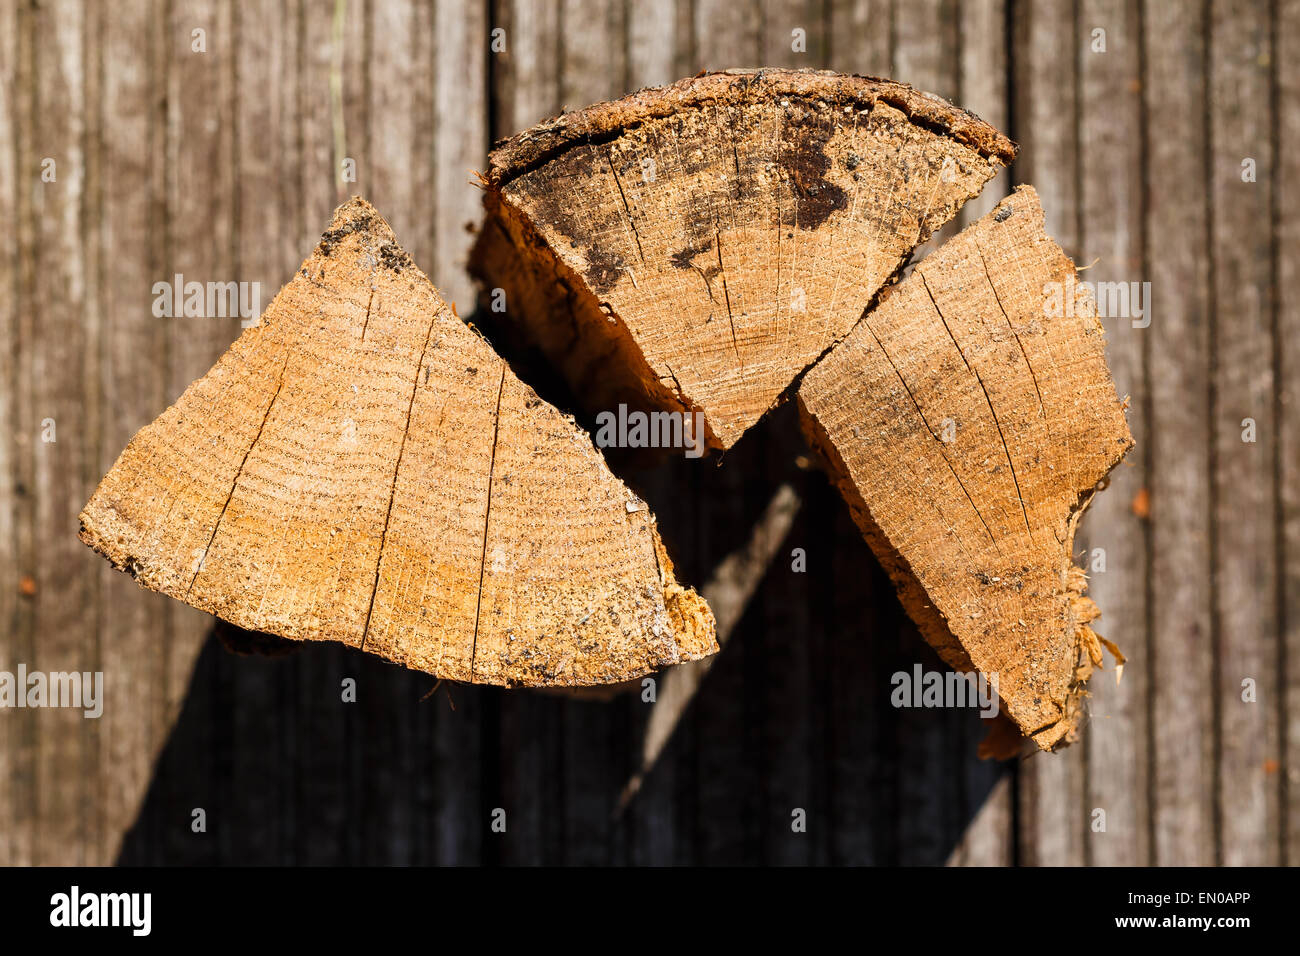 Nahaufnahme von drei Stücke von Scheitholz. Unscharfen Hintergrund, detaillierte Textur des Holzes. Stockfoto